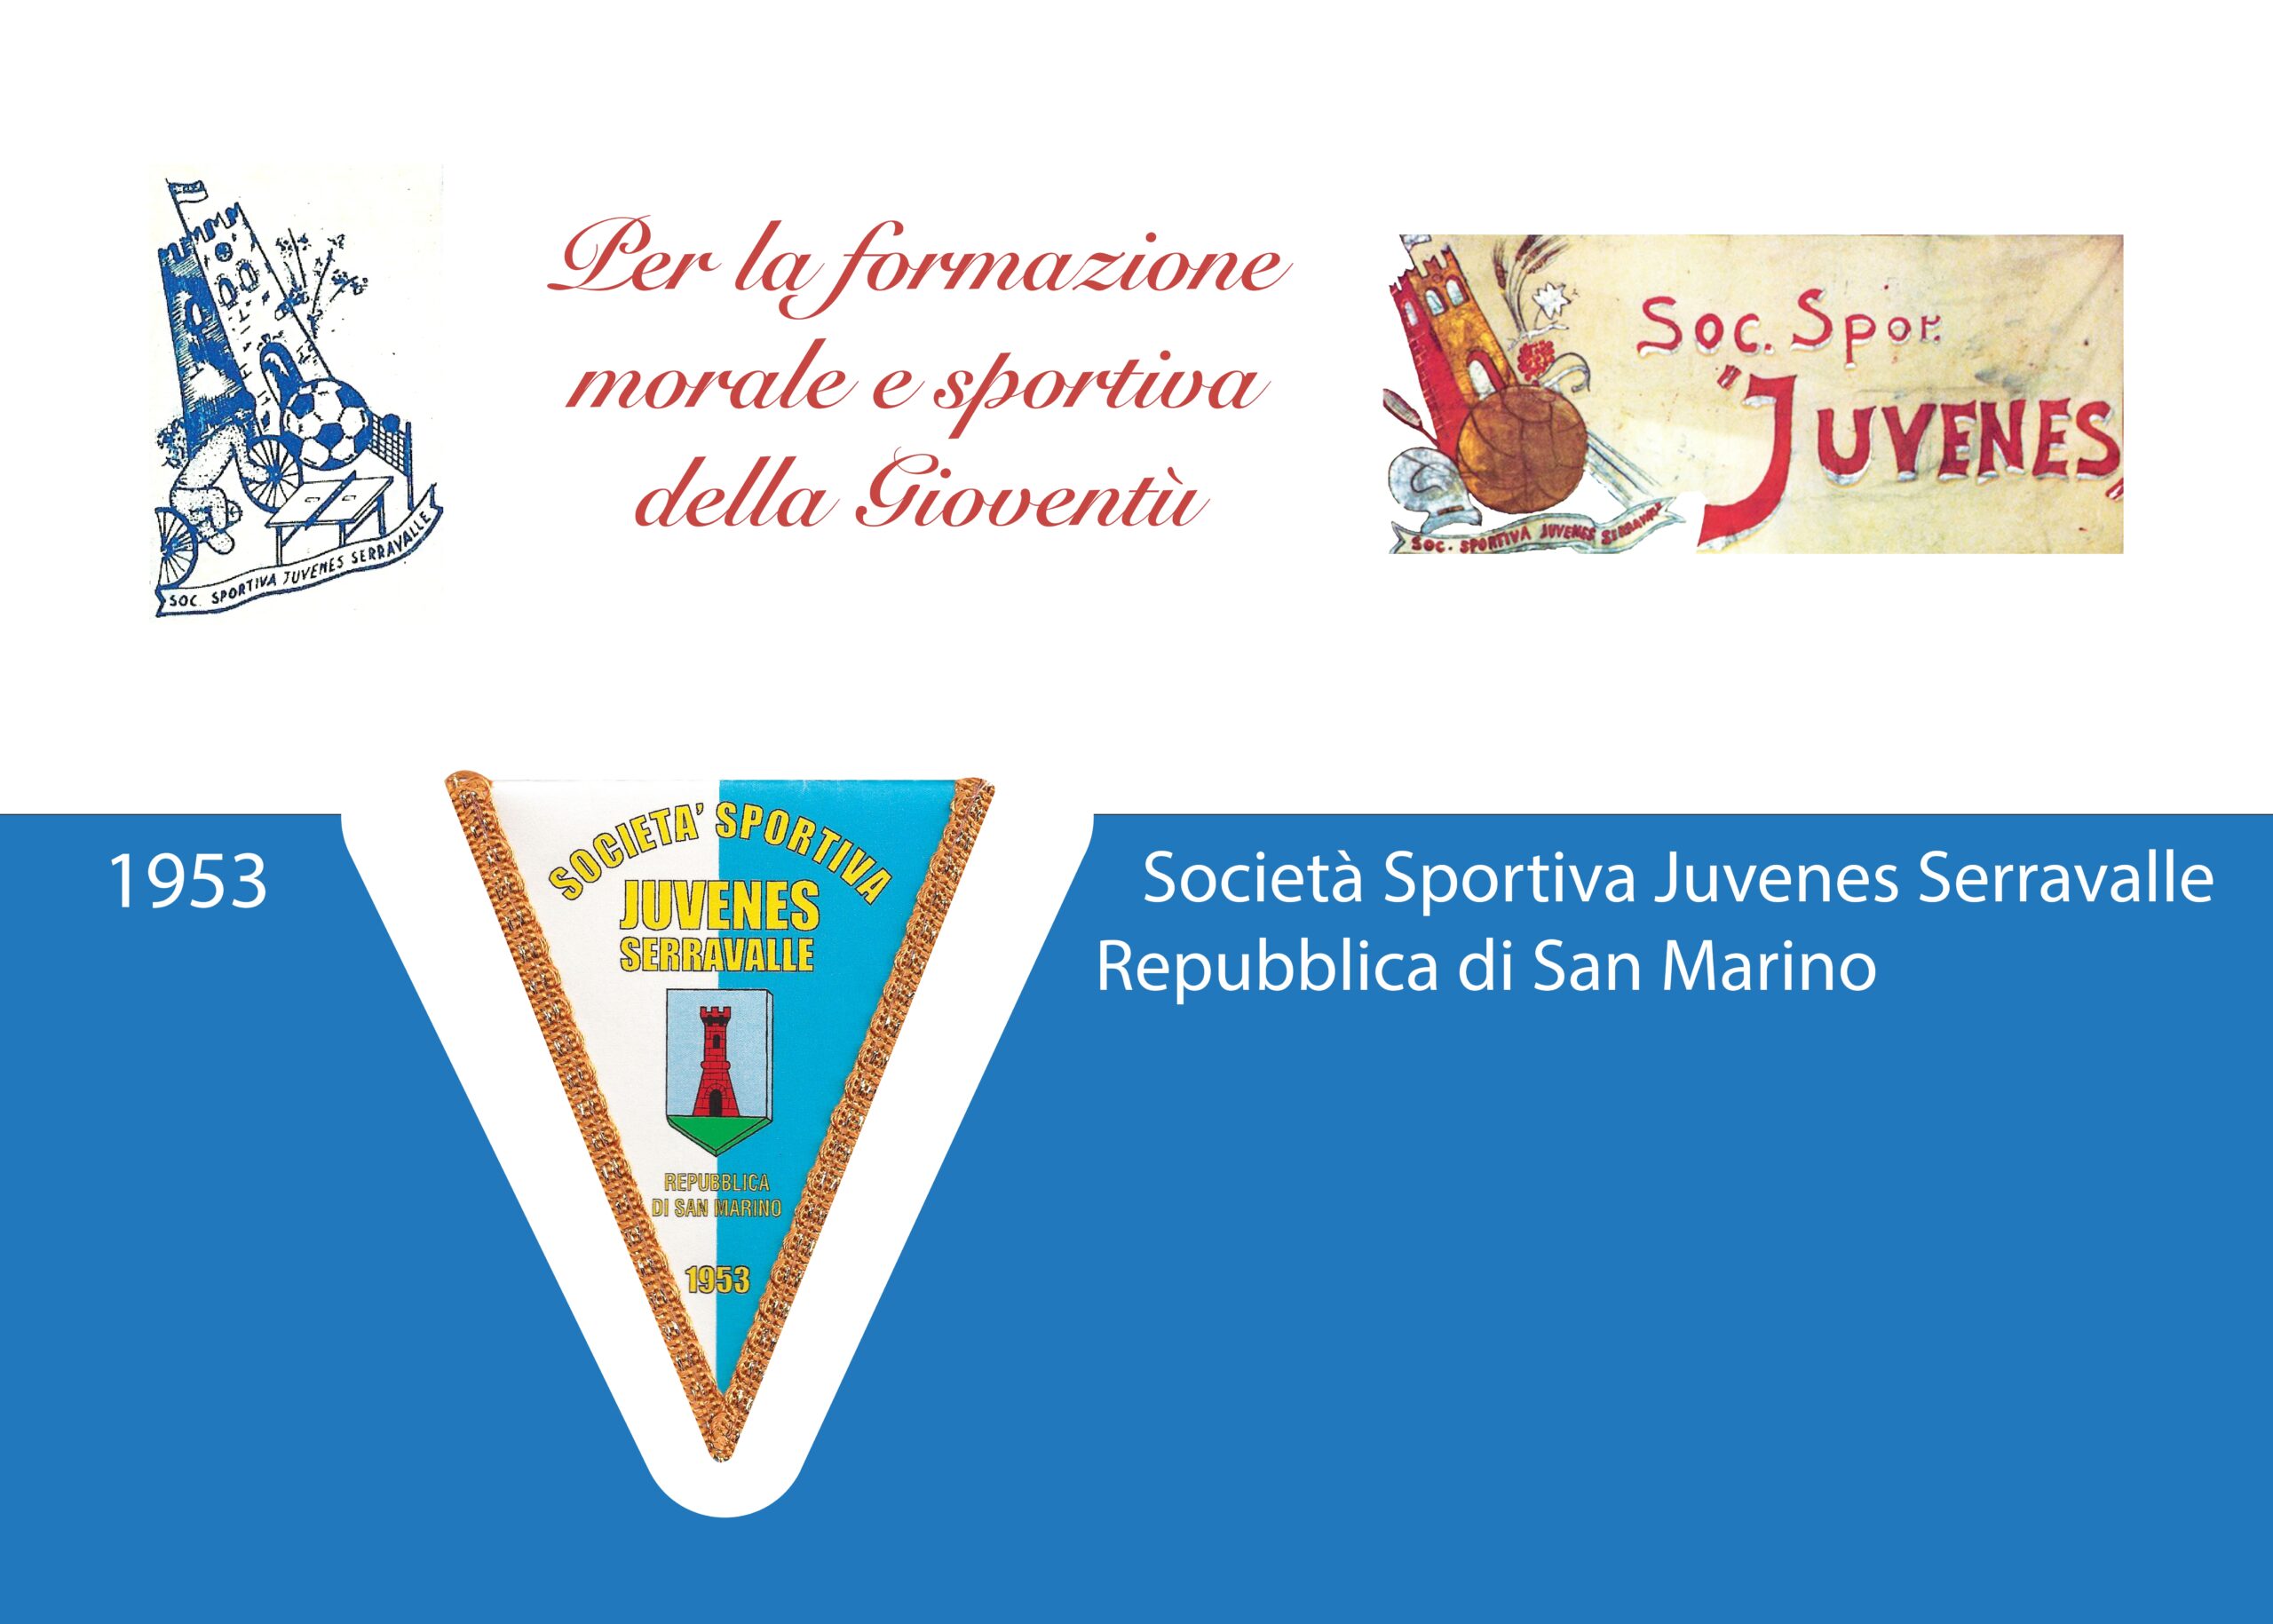 San Marino. Tanti eventi in occasione del 70esimo anniversario di fondazione della Società Sportiva Juvenes